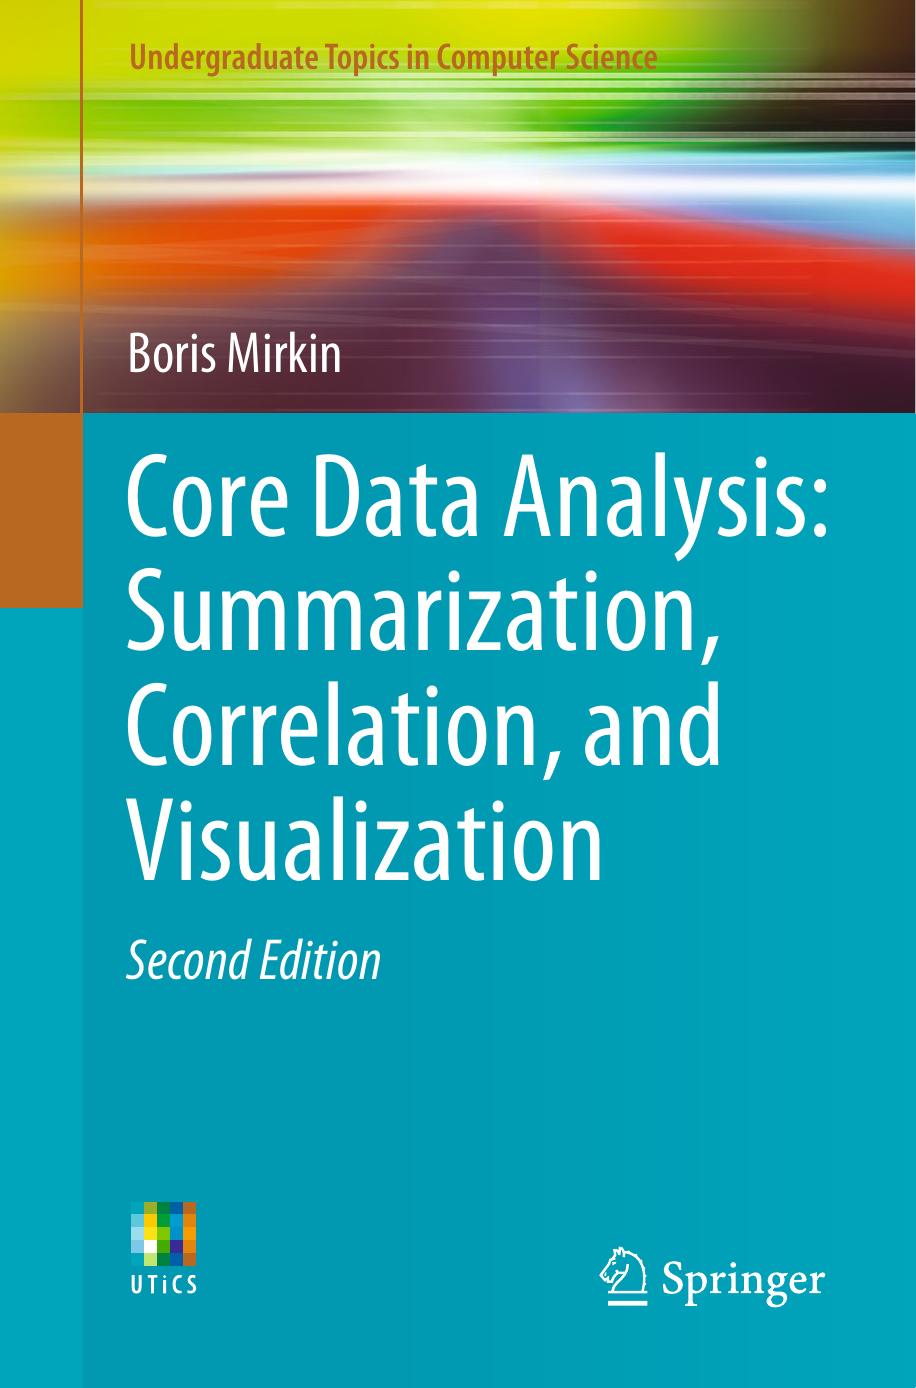 Core Data Analysis: Summarization, Correlation, and Visualization by Boris Mirkin